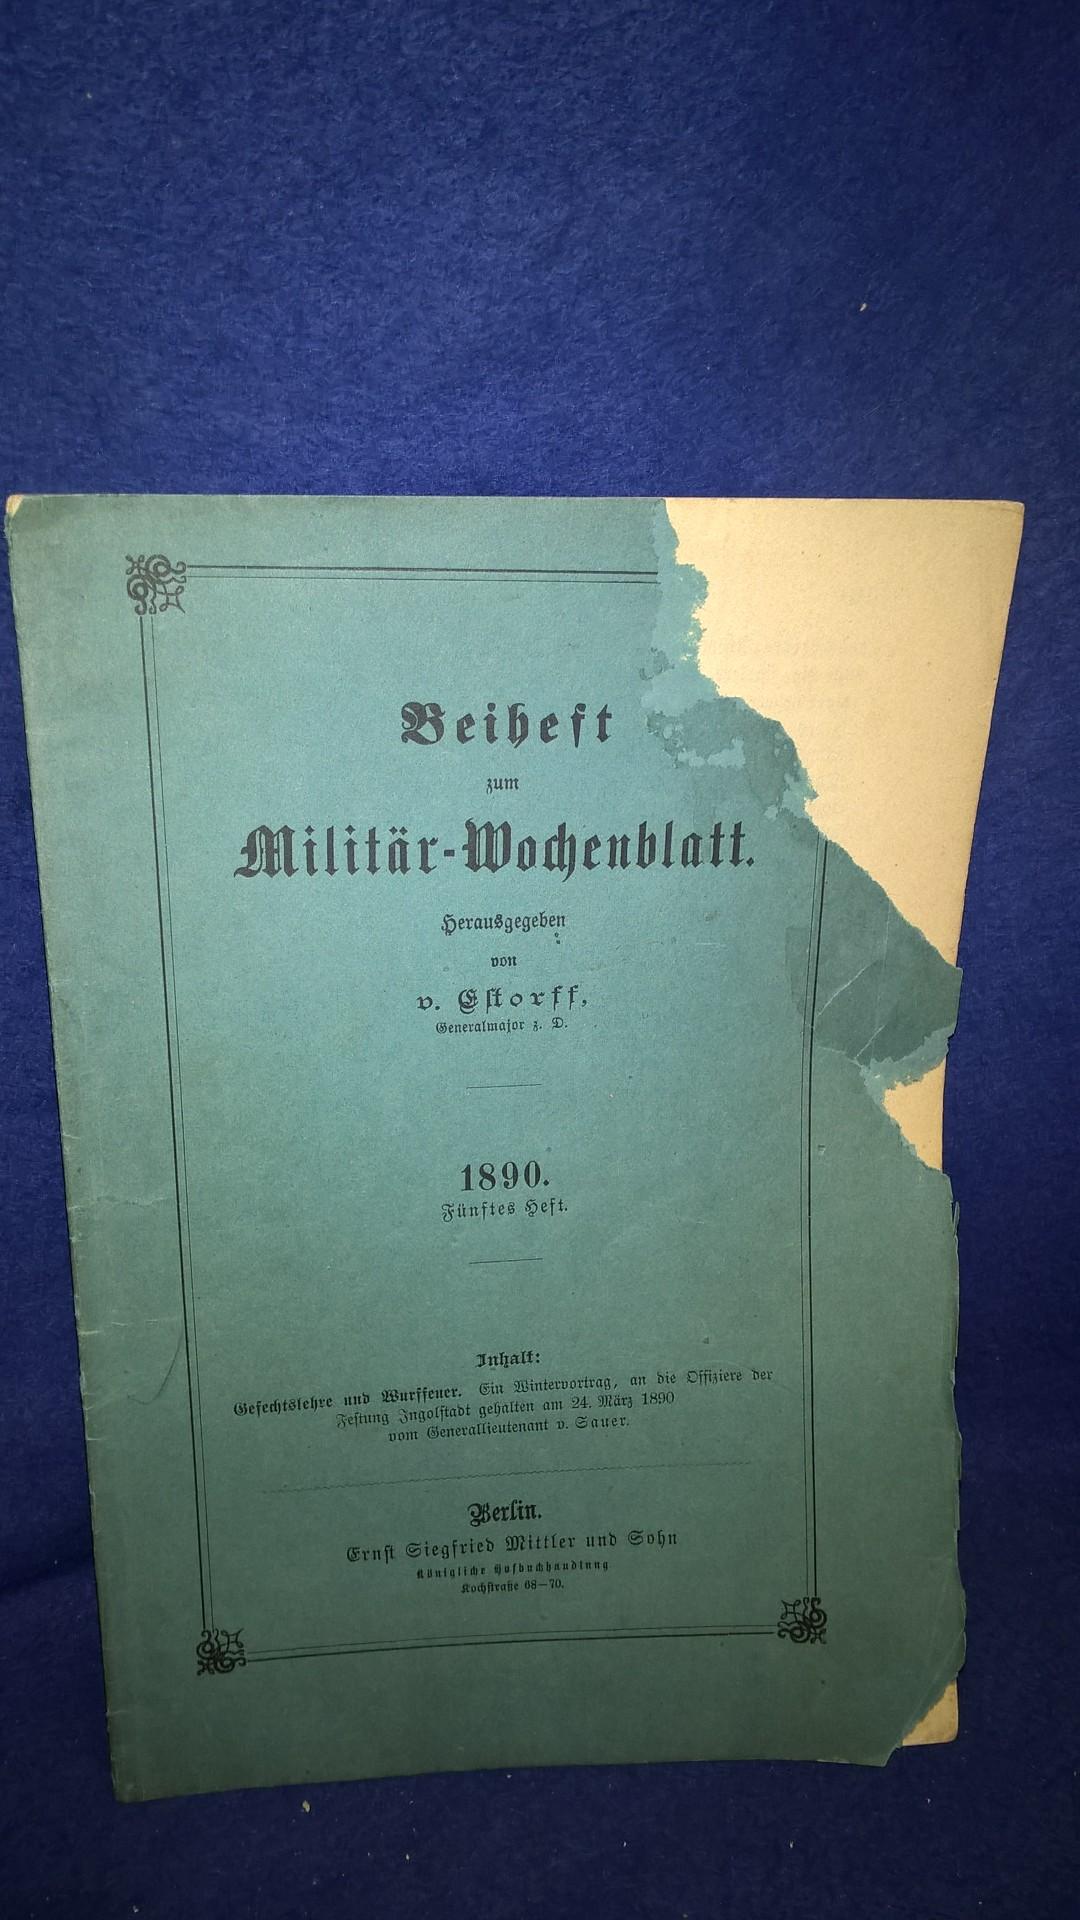 Beiheft zum Militär-Wochenblatt. Aus dem Inhalt: Gefechtslehre und Wurffeuer, ein Vortrag an die Offiziere der Festung Ingolstadt.